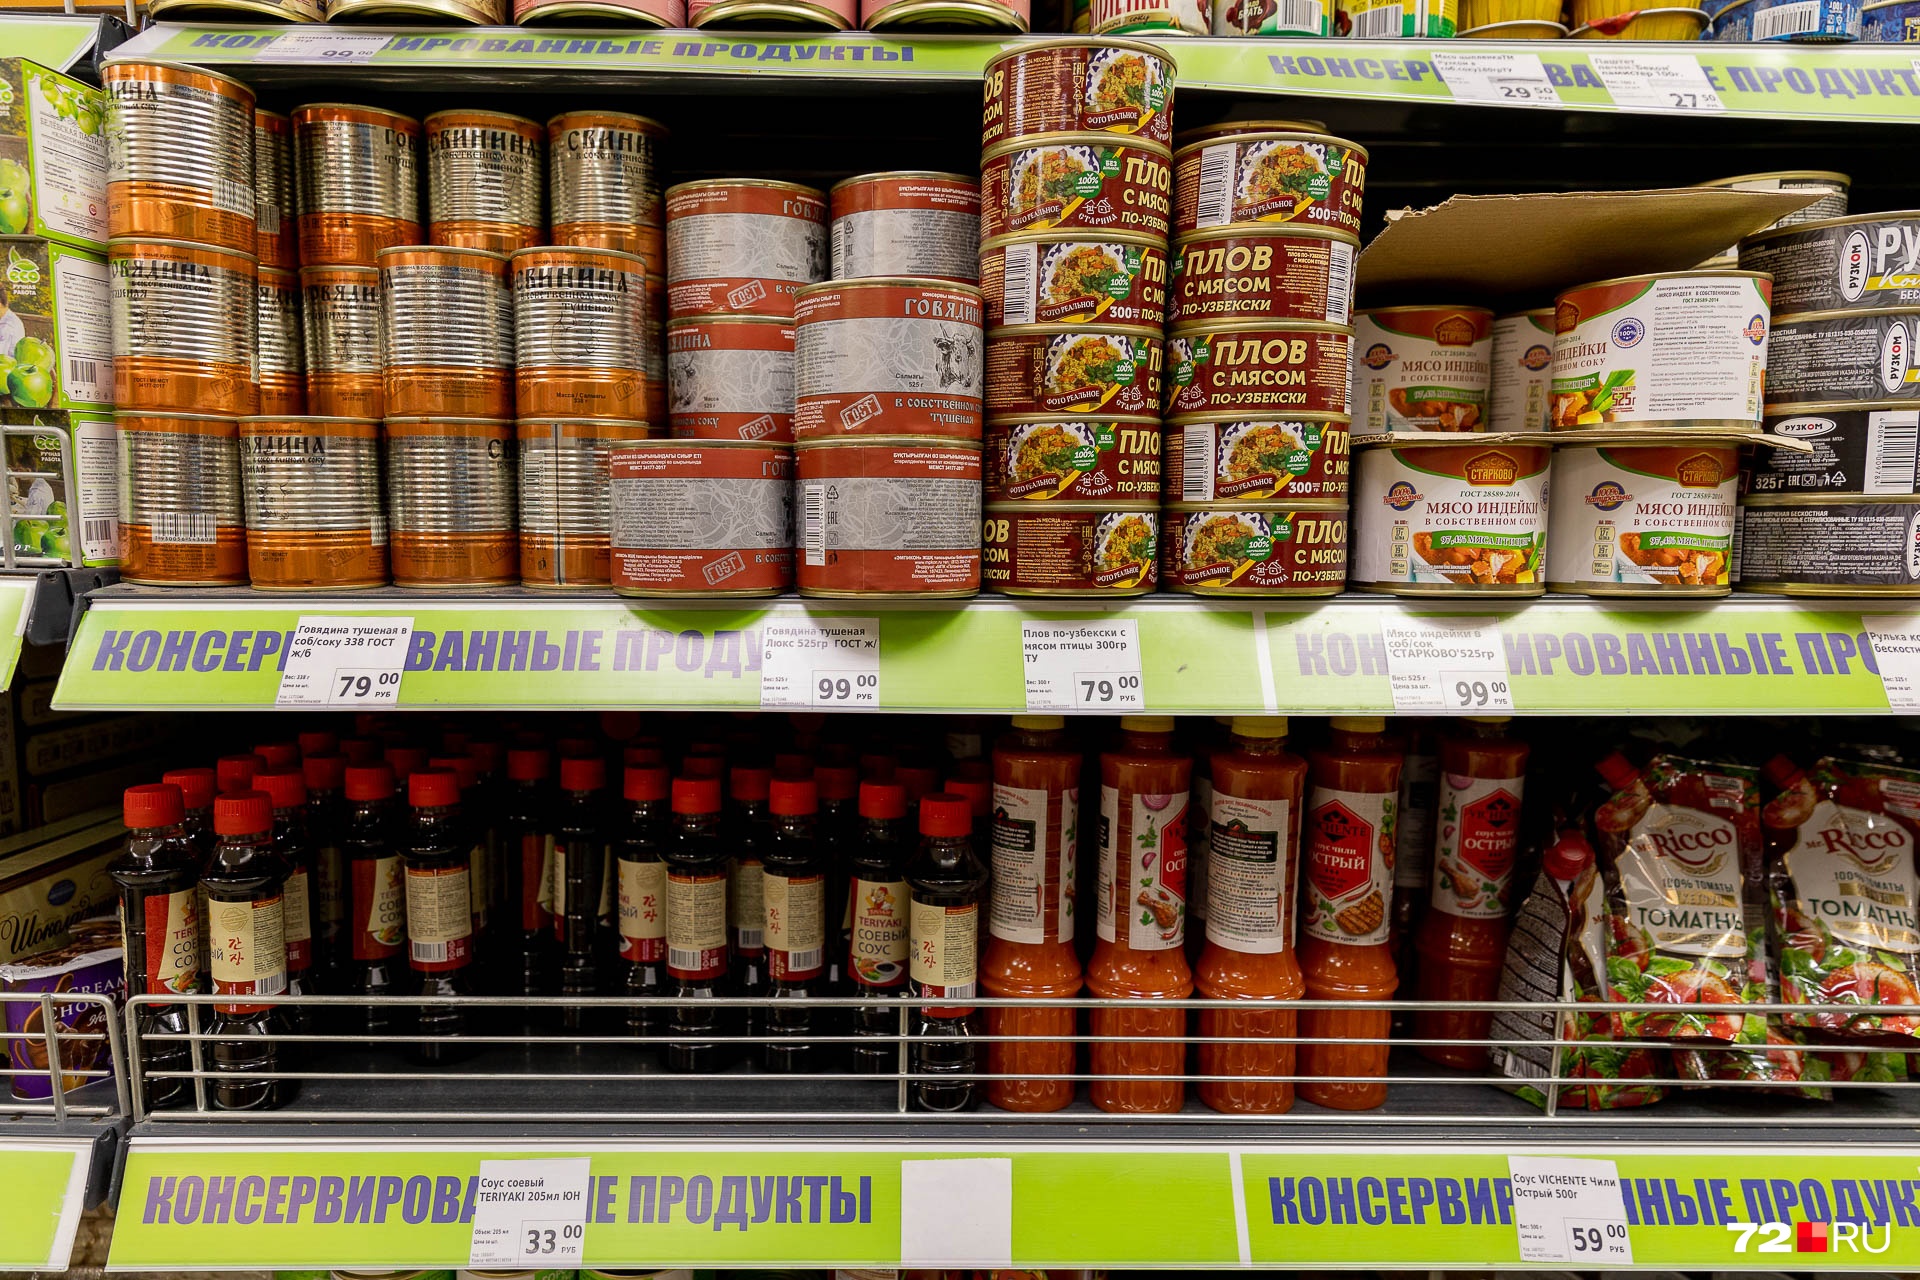 Тушенка — 79–99 рублей, консервированный плов — 79 рублей, а бутылочка соевого соуса — 39